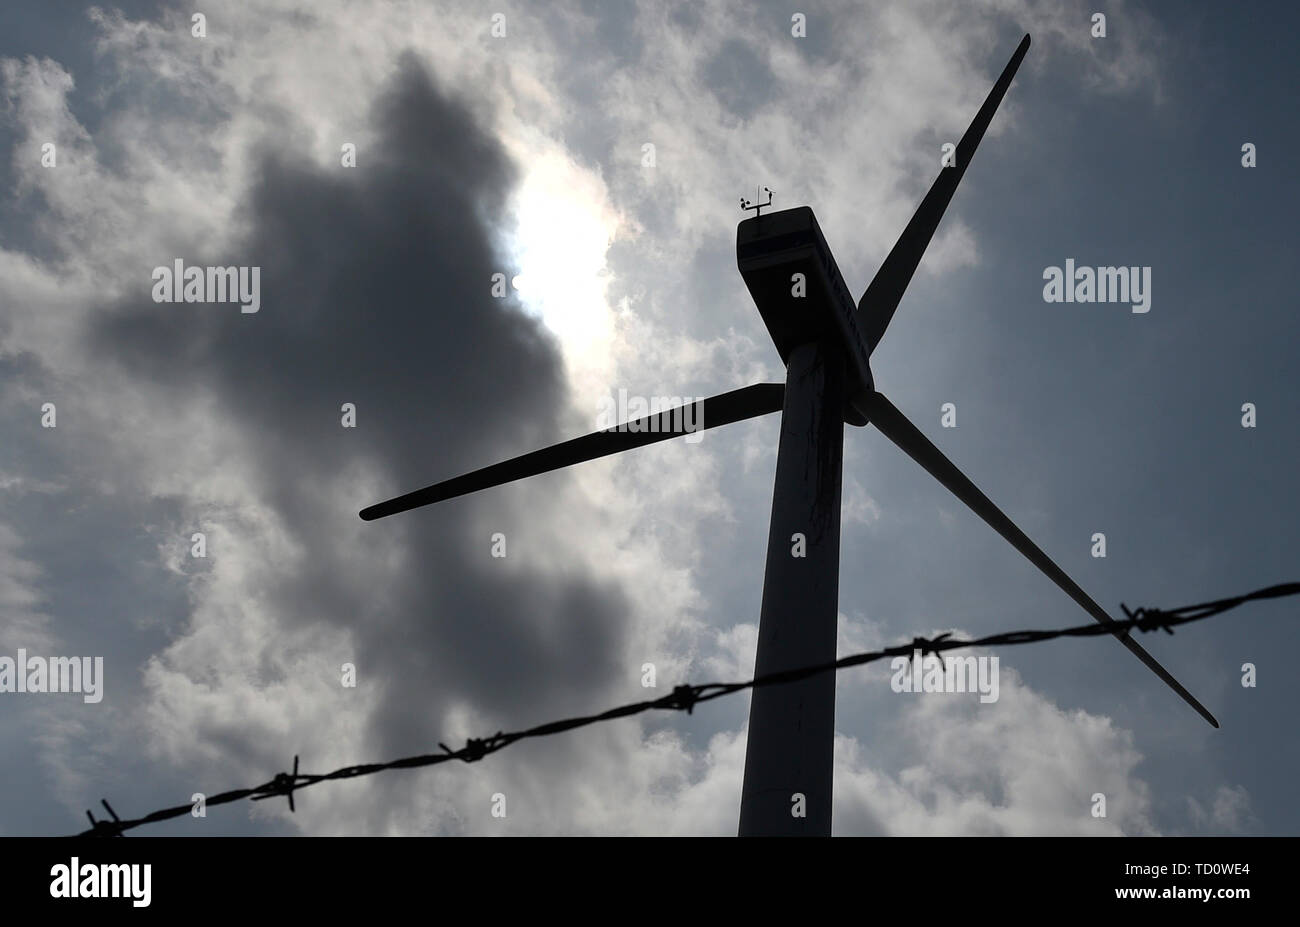 Svaty Hostyn, Czech Republic. 10th June, 2019. A wind turbine is seen in Svaty Hostyn, Zlin Region, Czech Republic, on June 10, 2019. Credit: Dalibor Gluck/CTK Photo/Alamy Live News Stock Photo